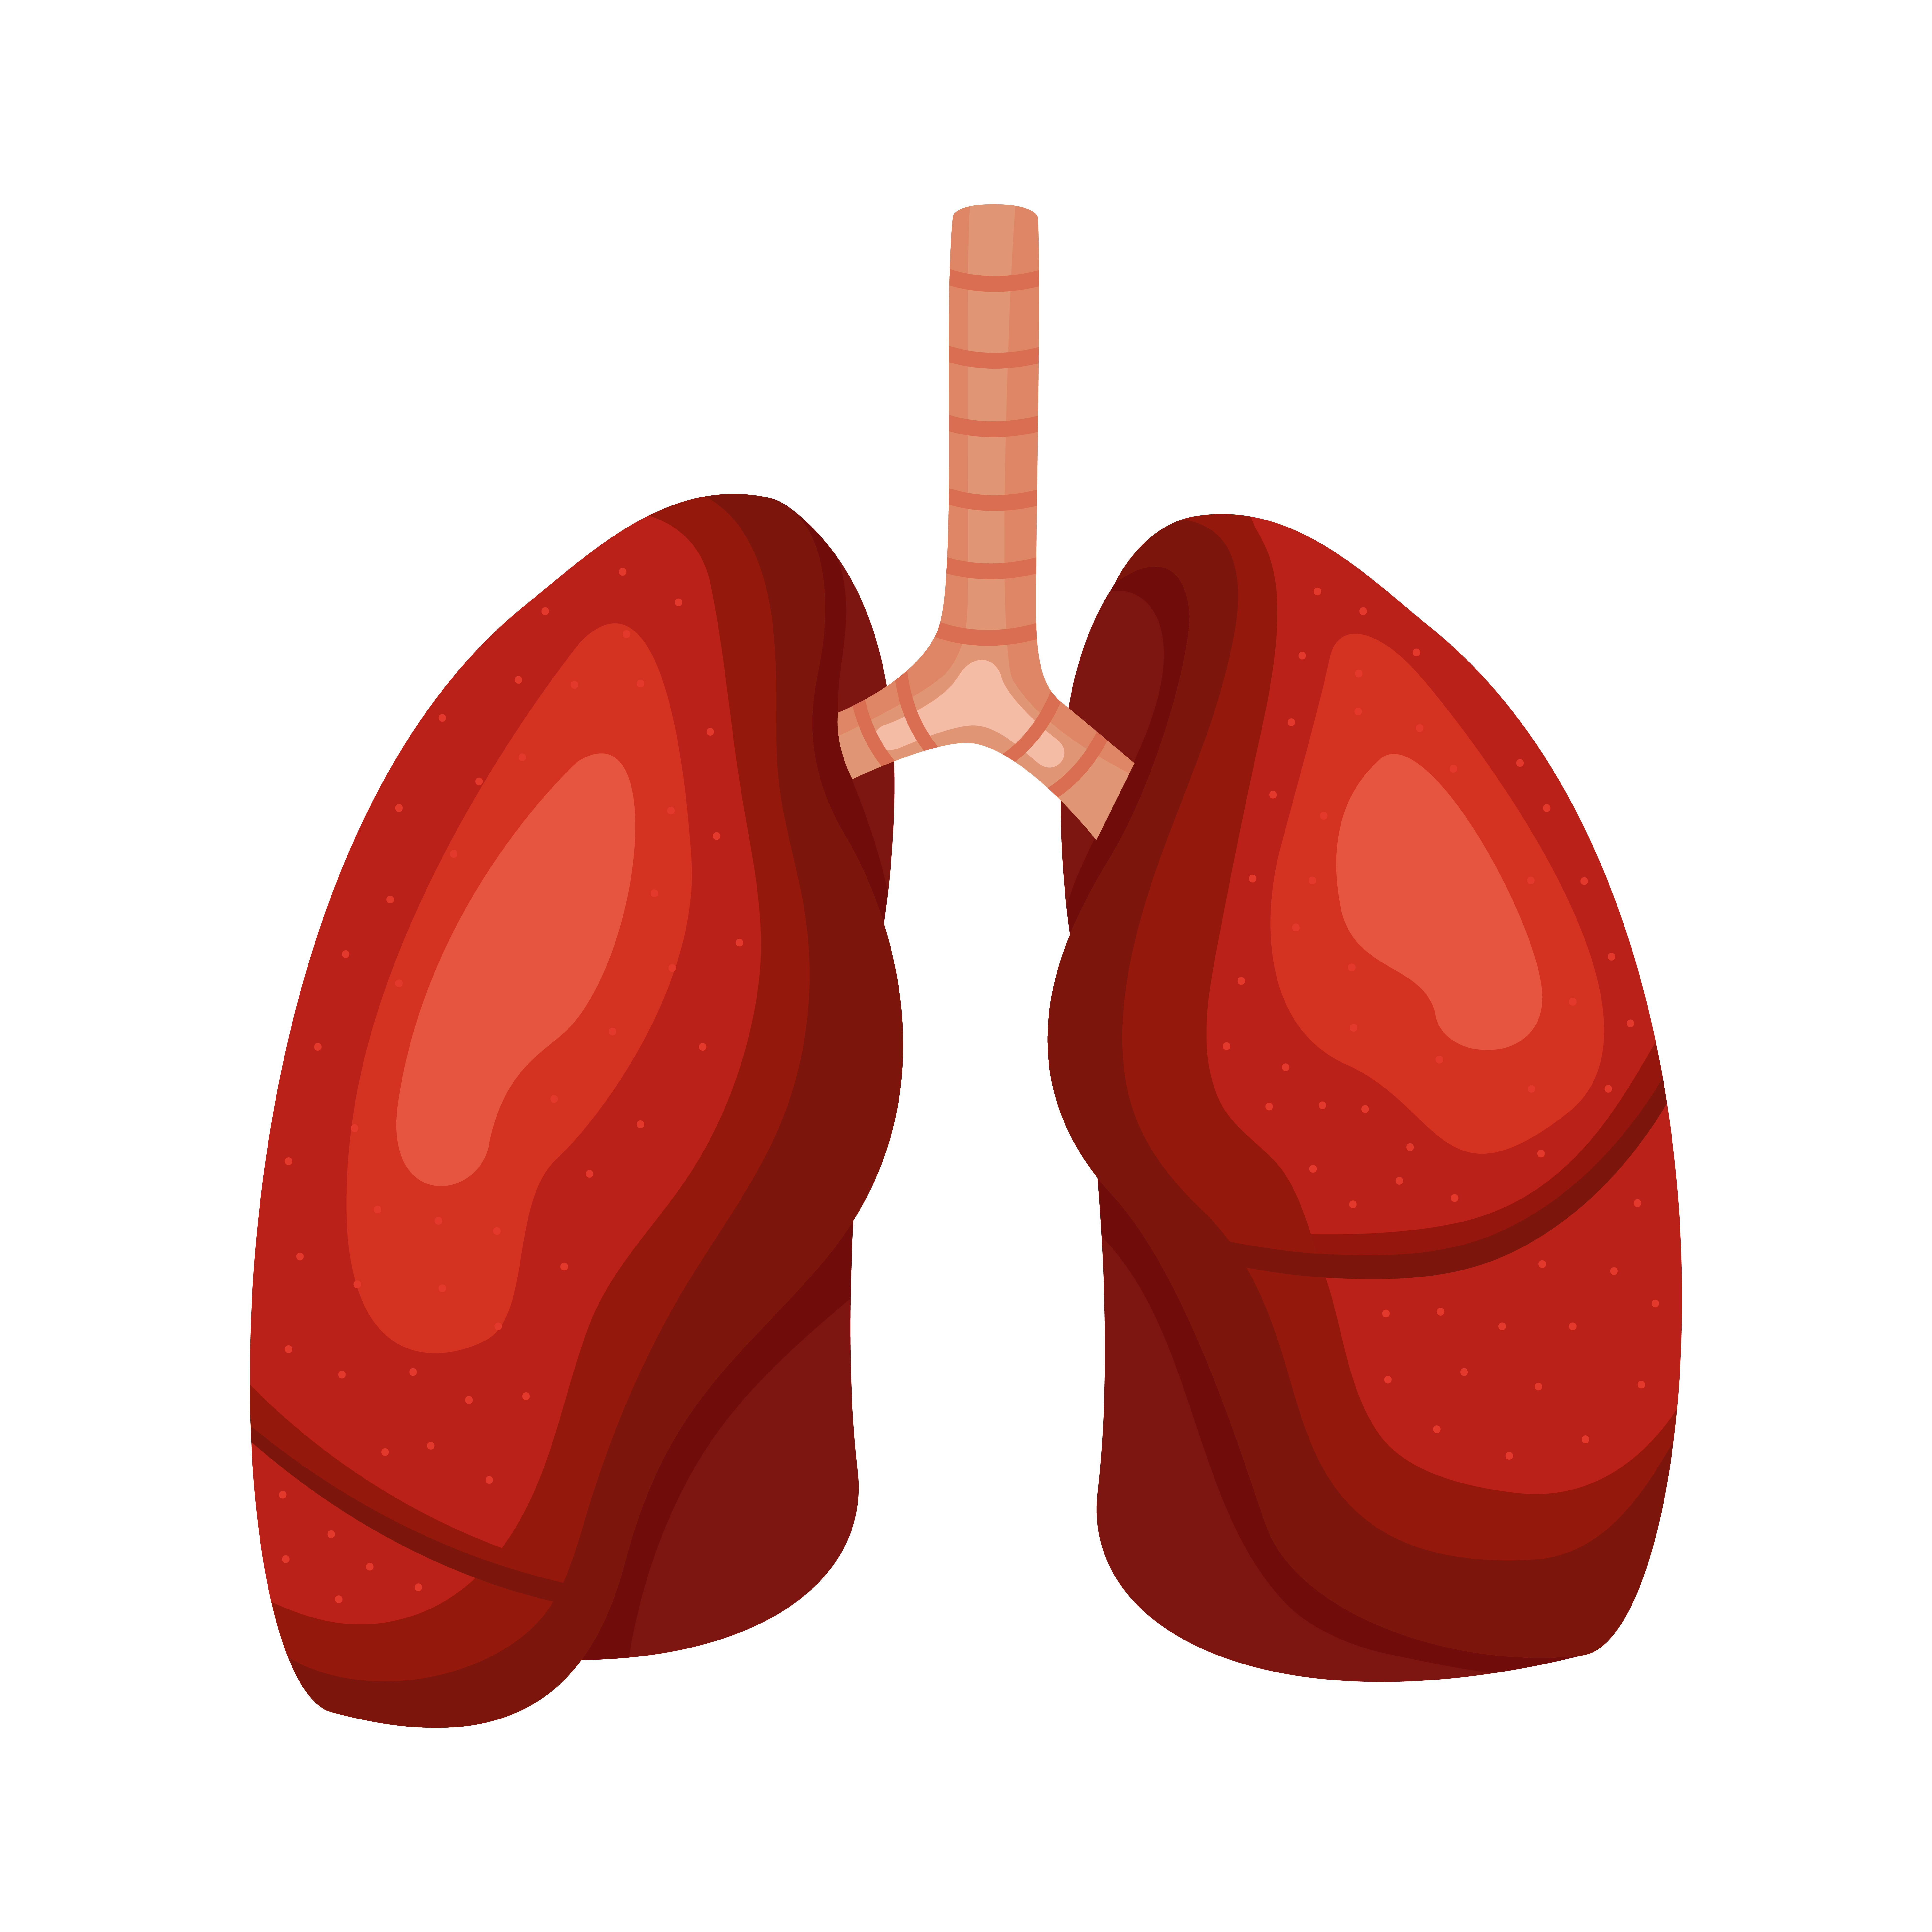 Humain corps anatomie - poumons, cœur, foie, intestins. ai 22247378 Photo  de stock chez Vecteezy